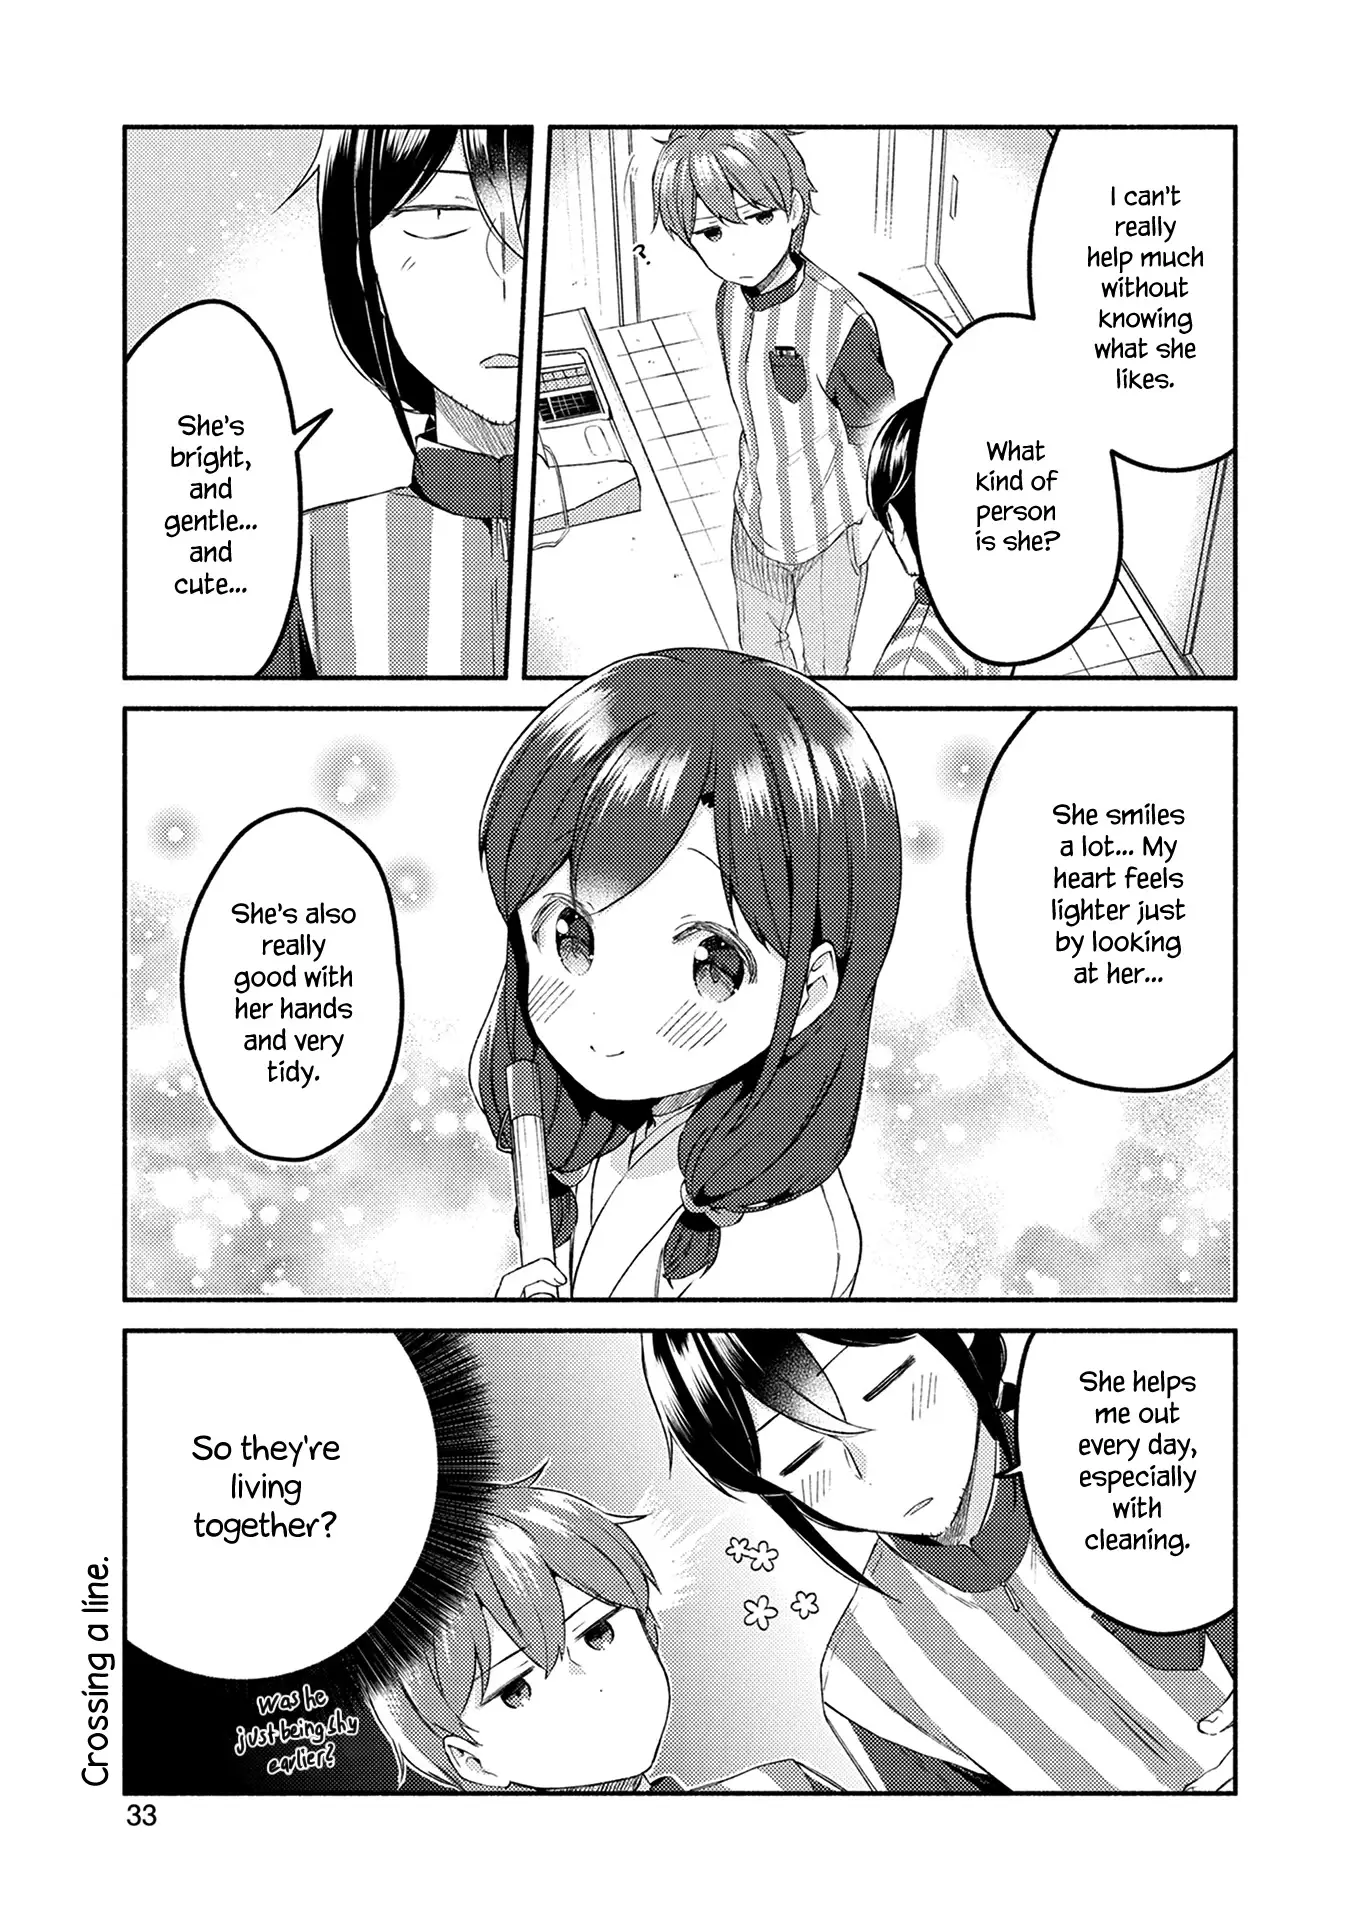 Mangaka-Sensei To Zashiki Warashi - 24 page 9-5175cfdd